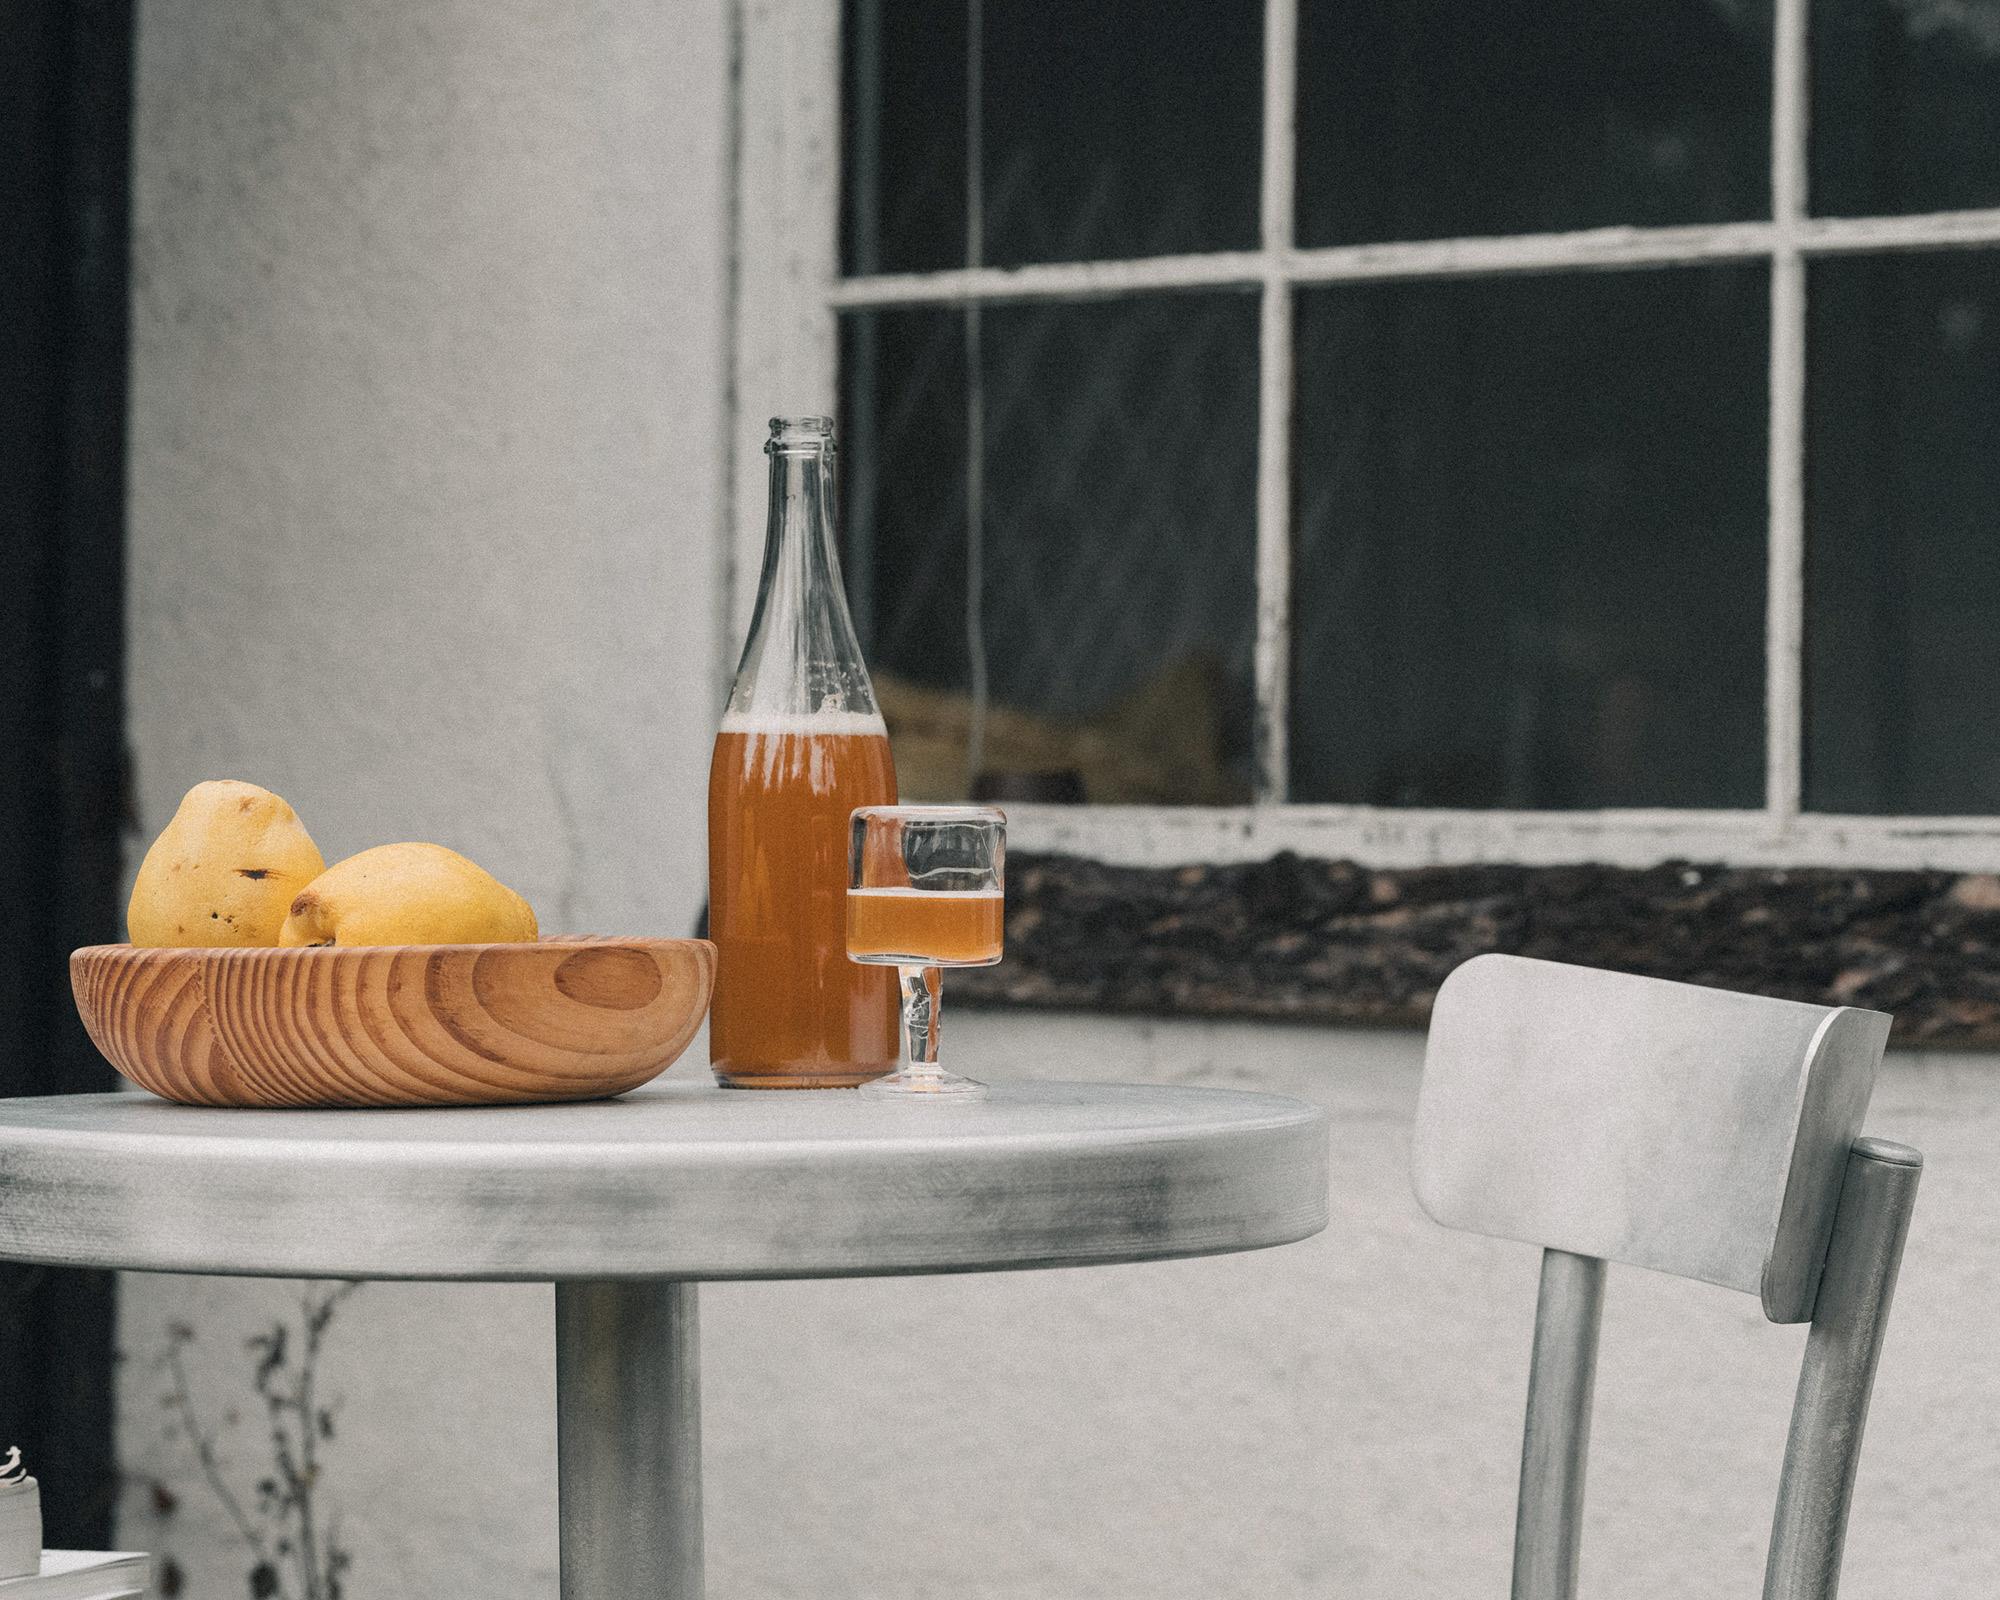 Der Tasca Table wurde in Zusammenarbeit mit dem portugiesischen Designer Pedro Sottomayor entworfen und ist ein leichter Aluminiumtisch für den Innen- und Außenbereich, inspiriert von den lokalen Tavernen in Portugal, den Tascas